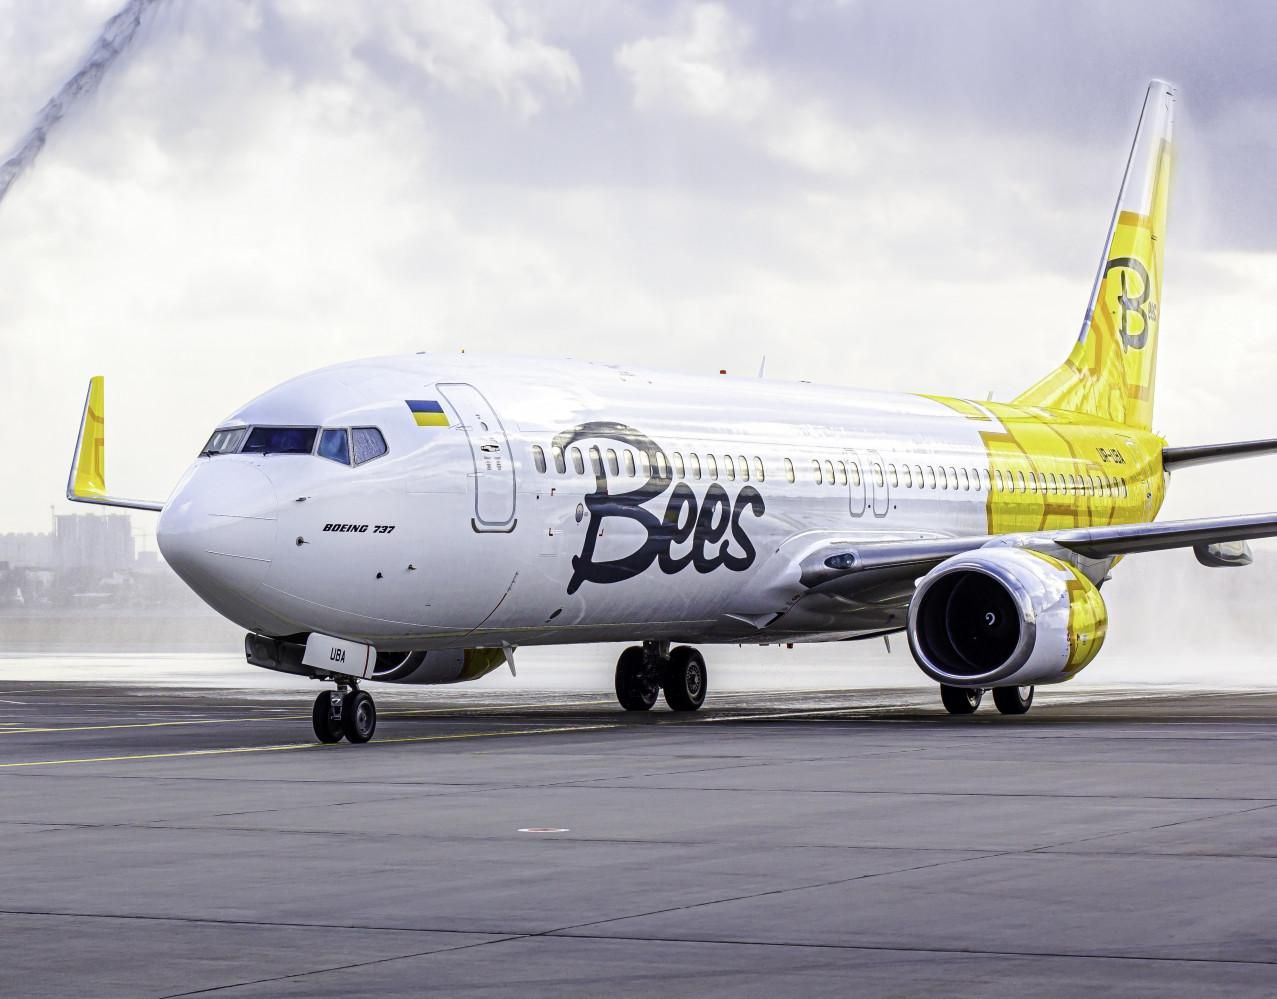 Bees Airline устроила распродажу билетов на летний период: цены и направления - Travel